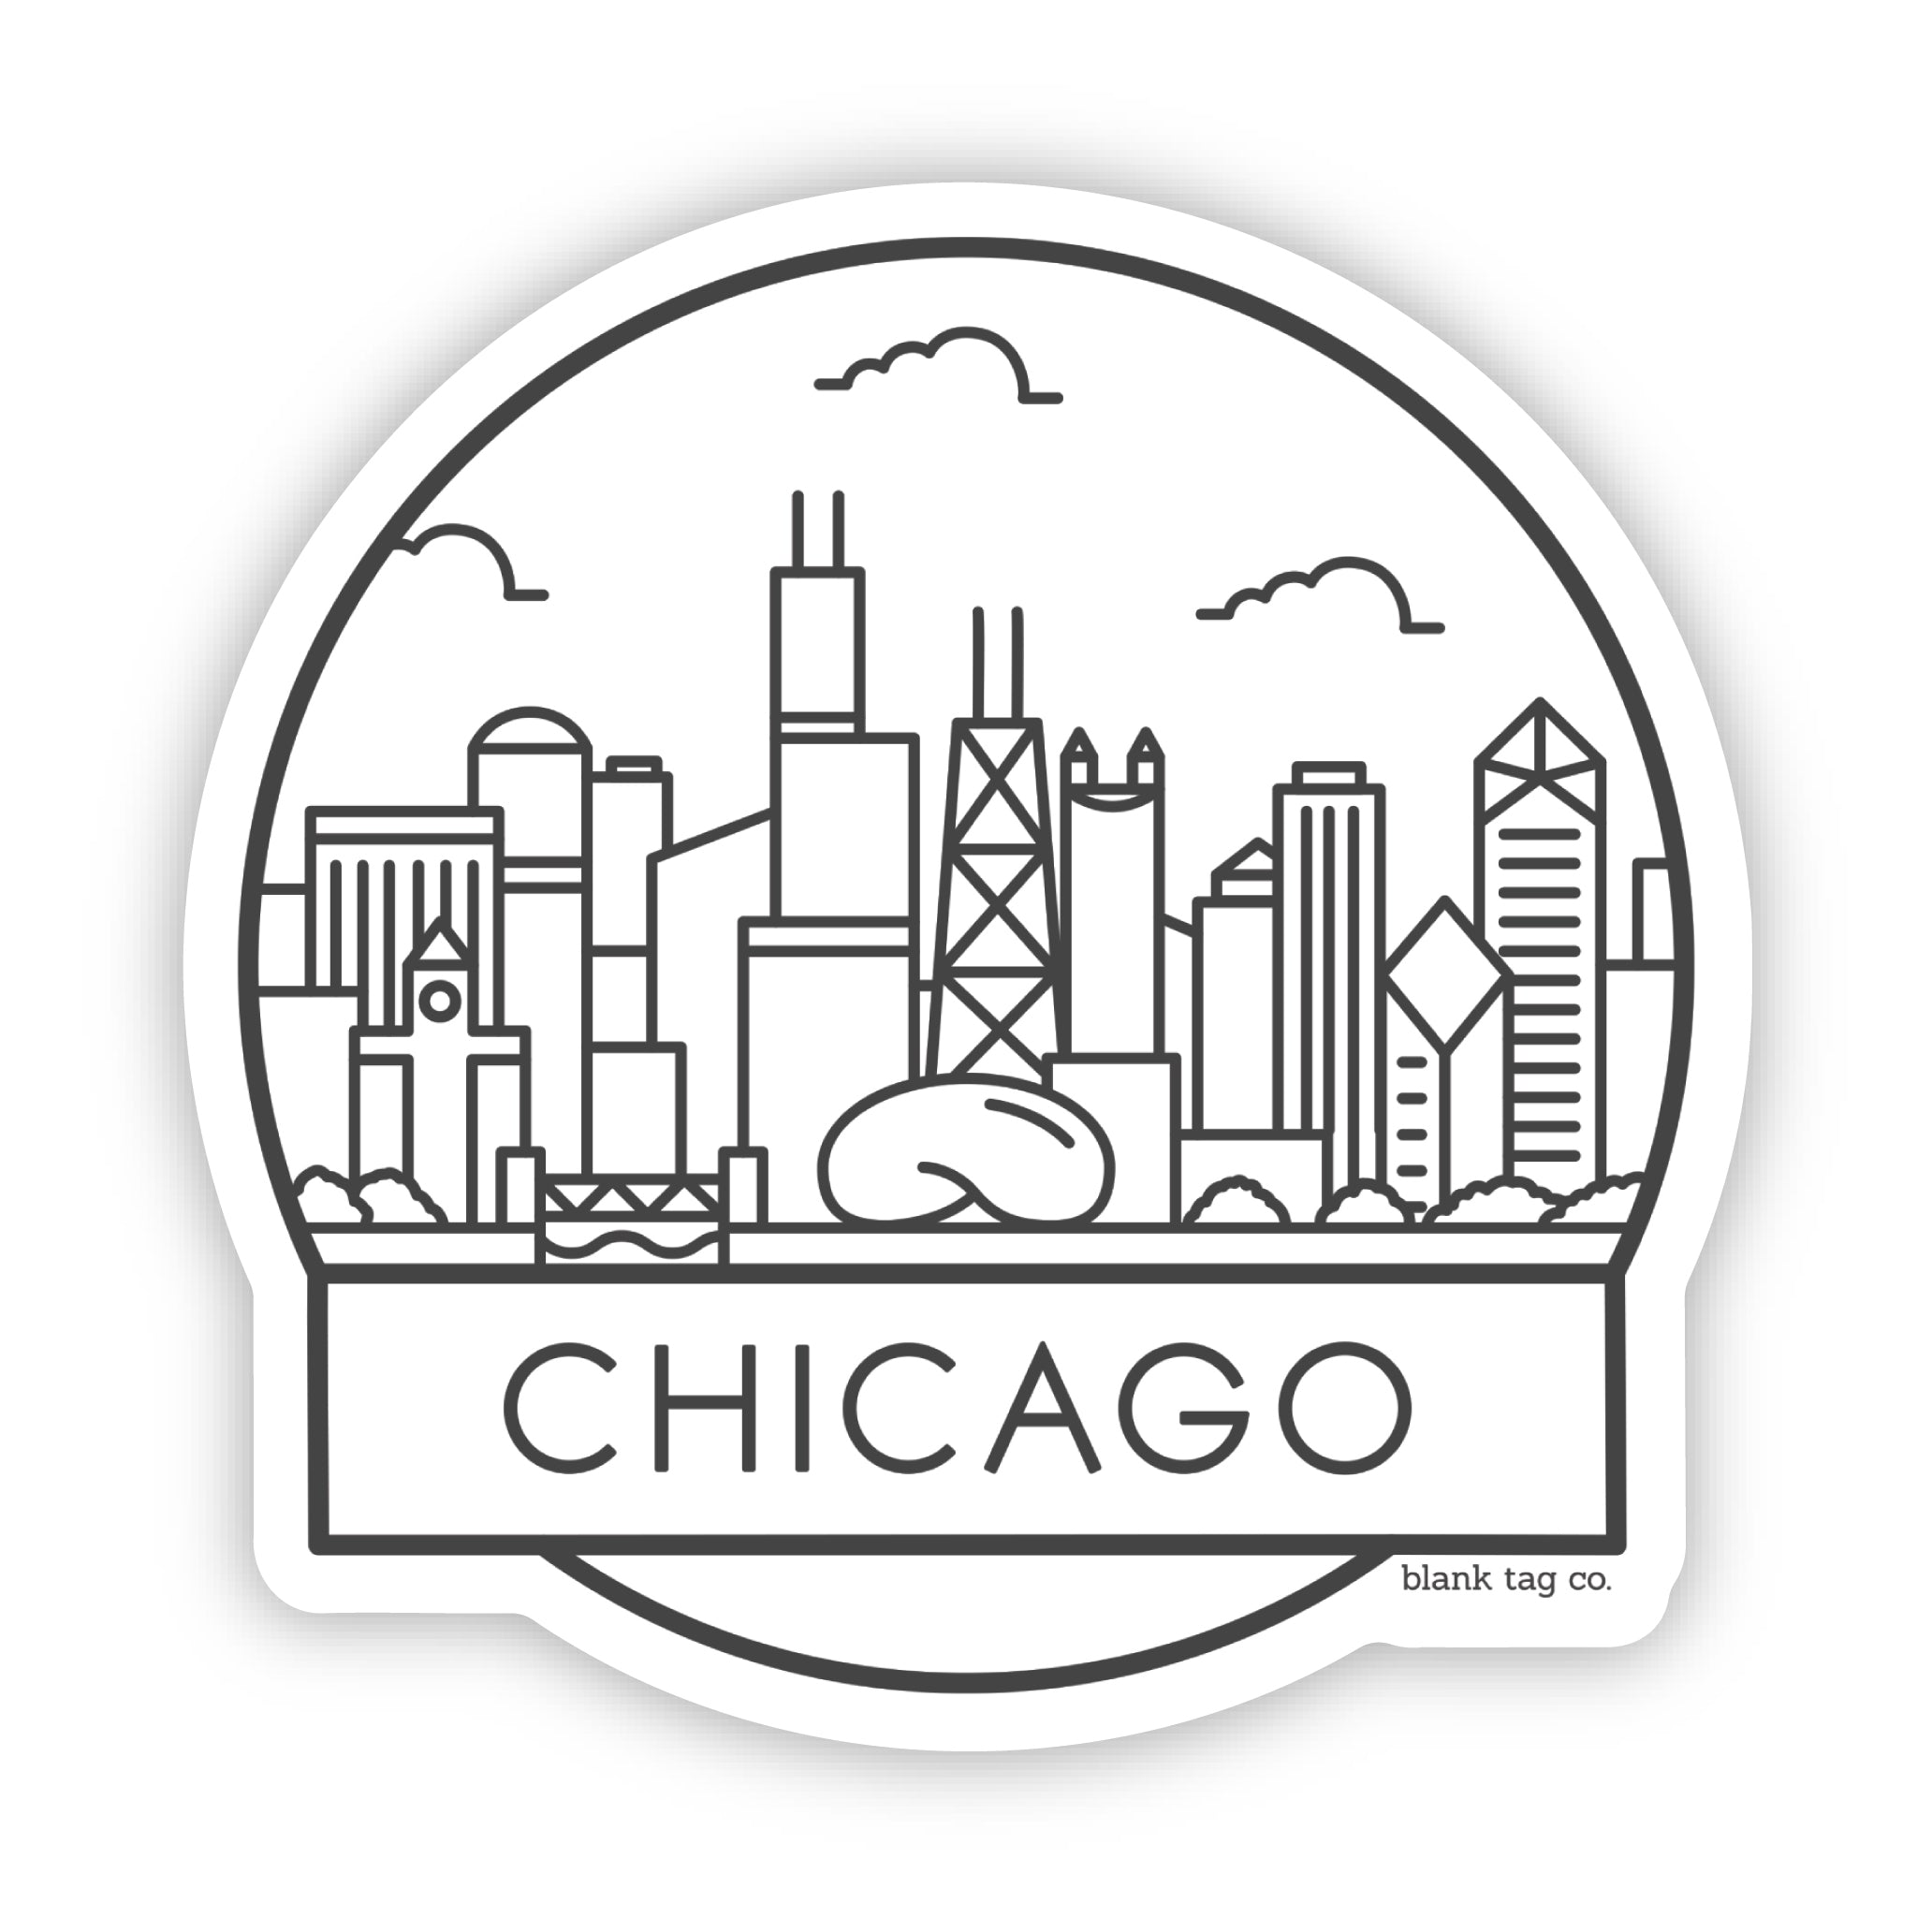 The Chicago Cityscape Sticker